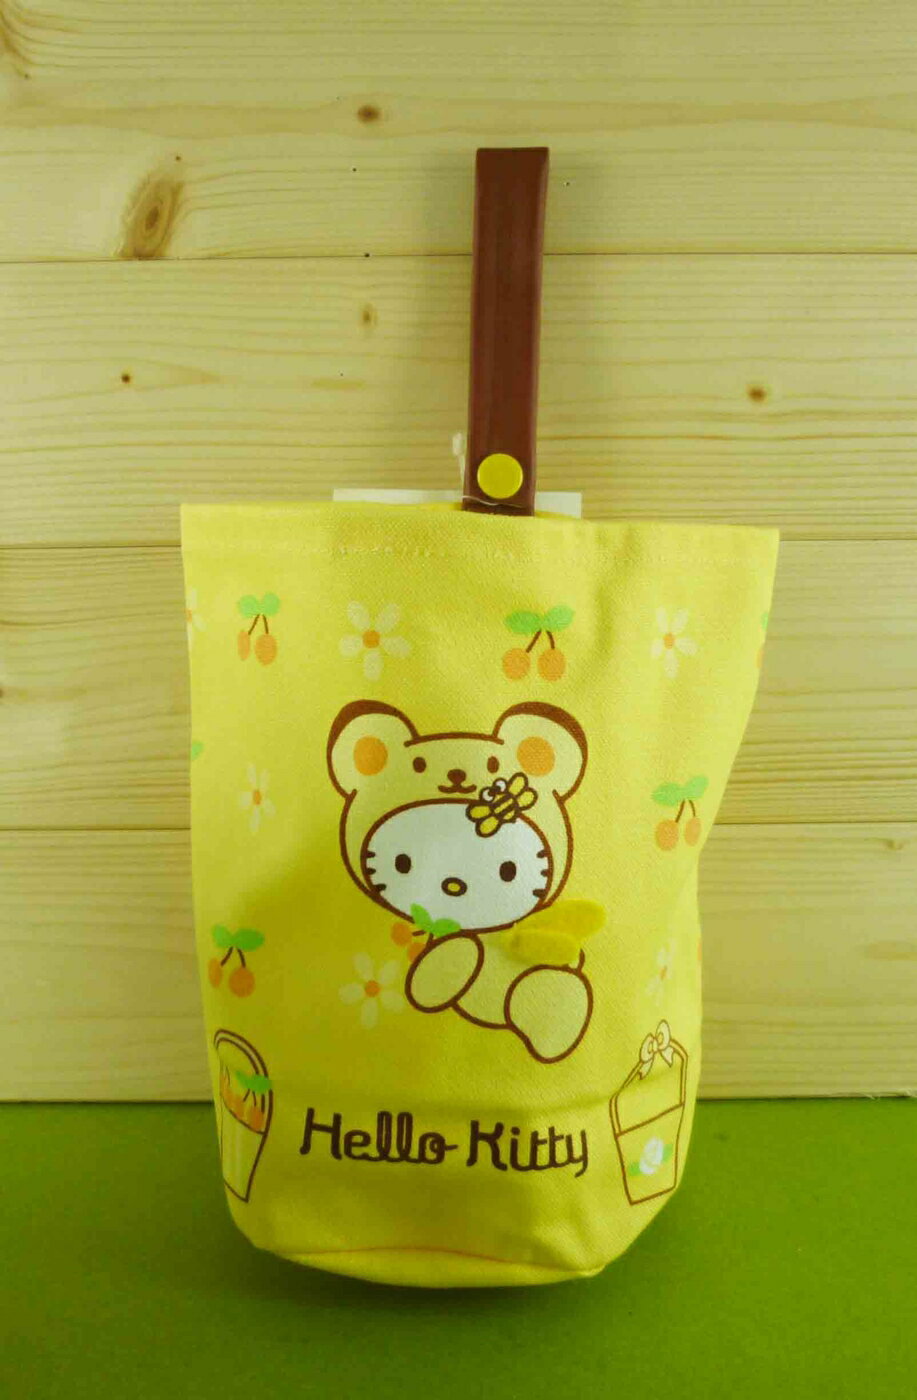 【震撼精品百貨】Hello Kitty 廚房置物袋-小熊圖案【共1款】 震撼日式精品百貨